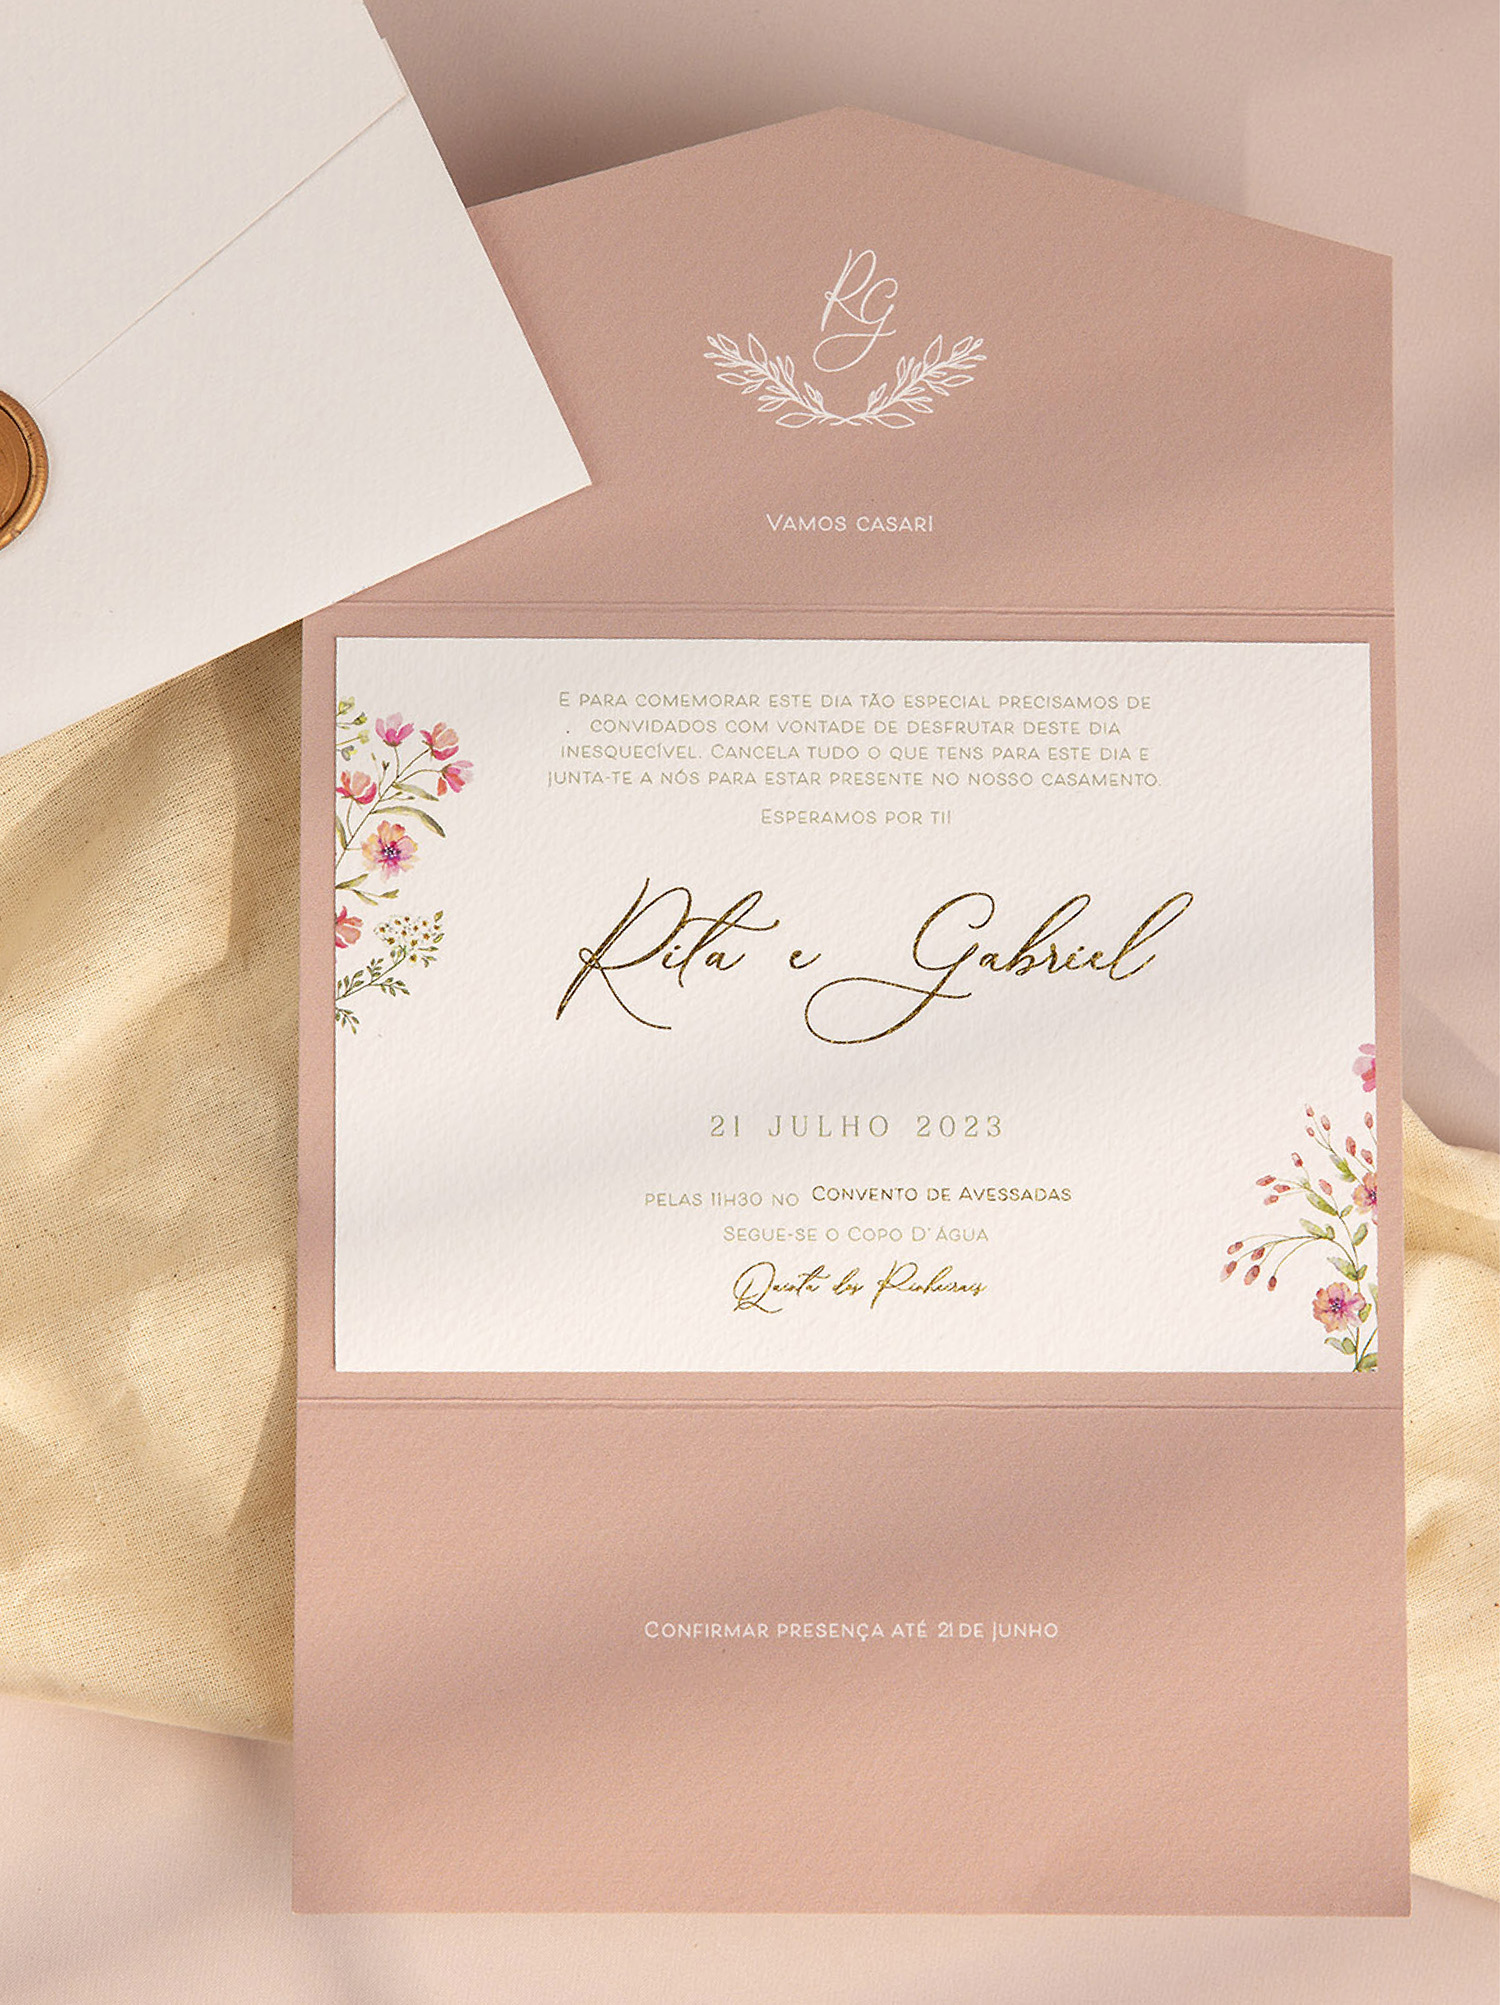 Convite de casamento com detalhes florais e detalhes dourado e envelope branco com lacre dourado fundo rosa